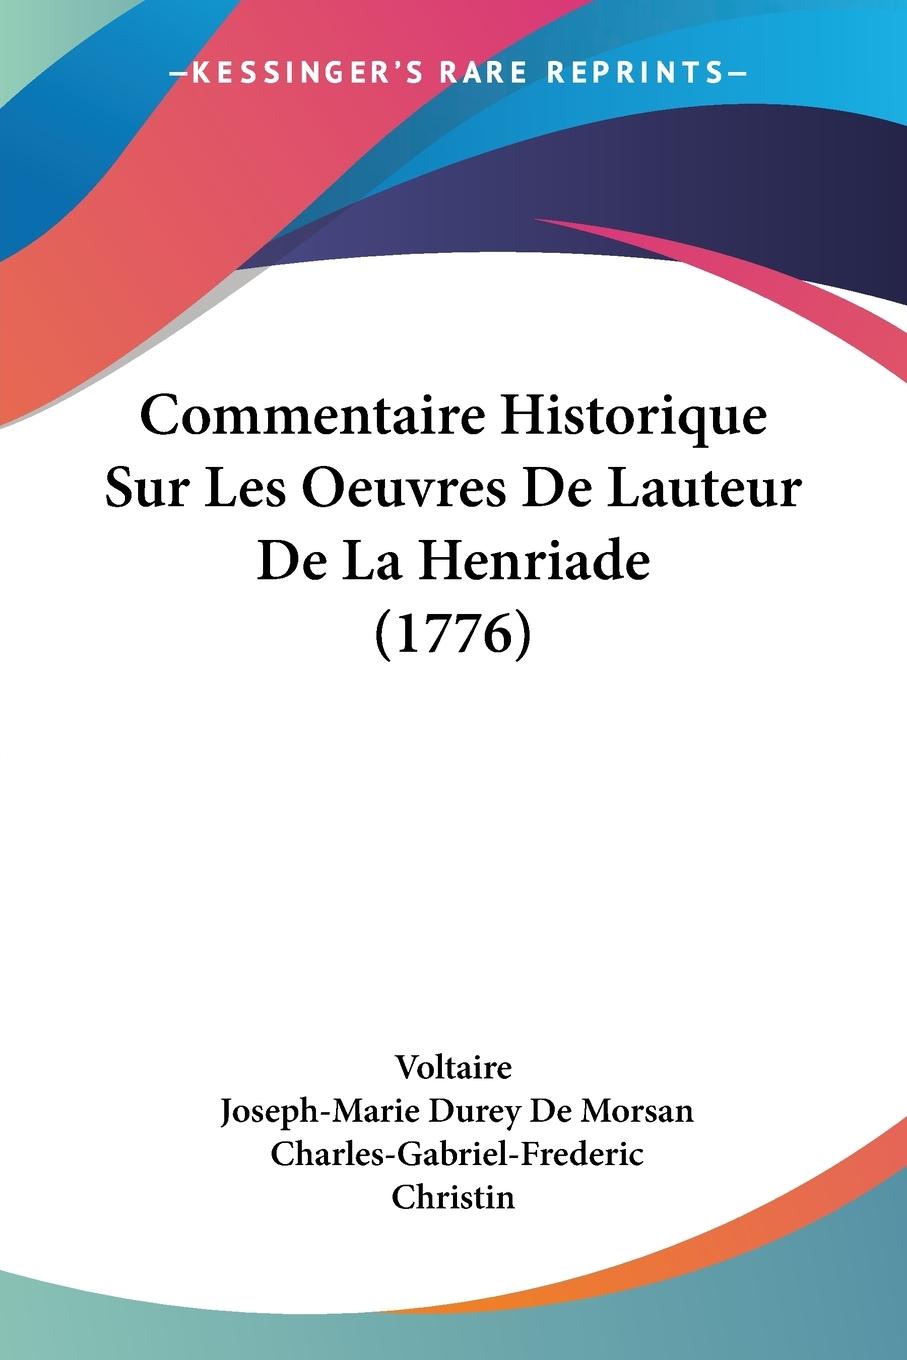 Commentaire Historique Sur Les Oeuvres De Lauteur De La Henriade (1776) - Voltaire Morsan, Joseph-Marie Durey De Christin, Charles-Gabriel-Frederic